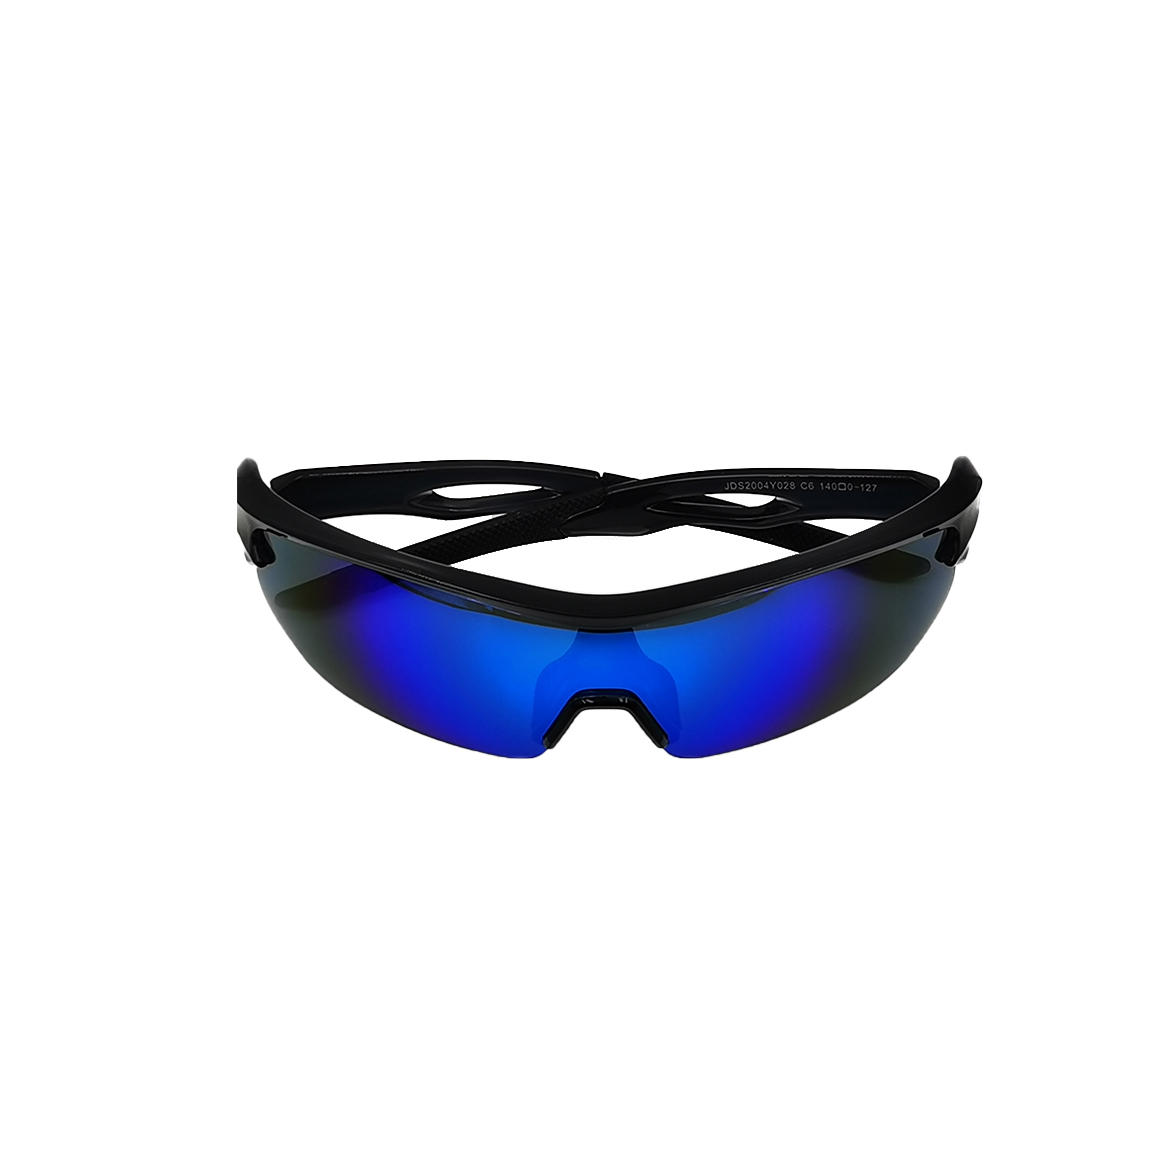 Design logotipo personalizado marca uv400 polarizado ciclismo esqui condução óculos de sol à prova de vento óculos de sol esportivos